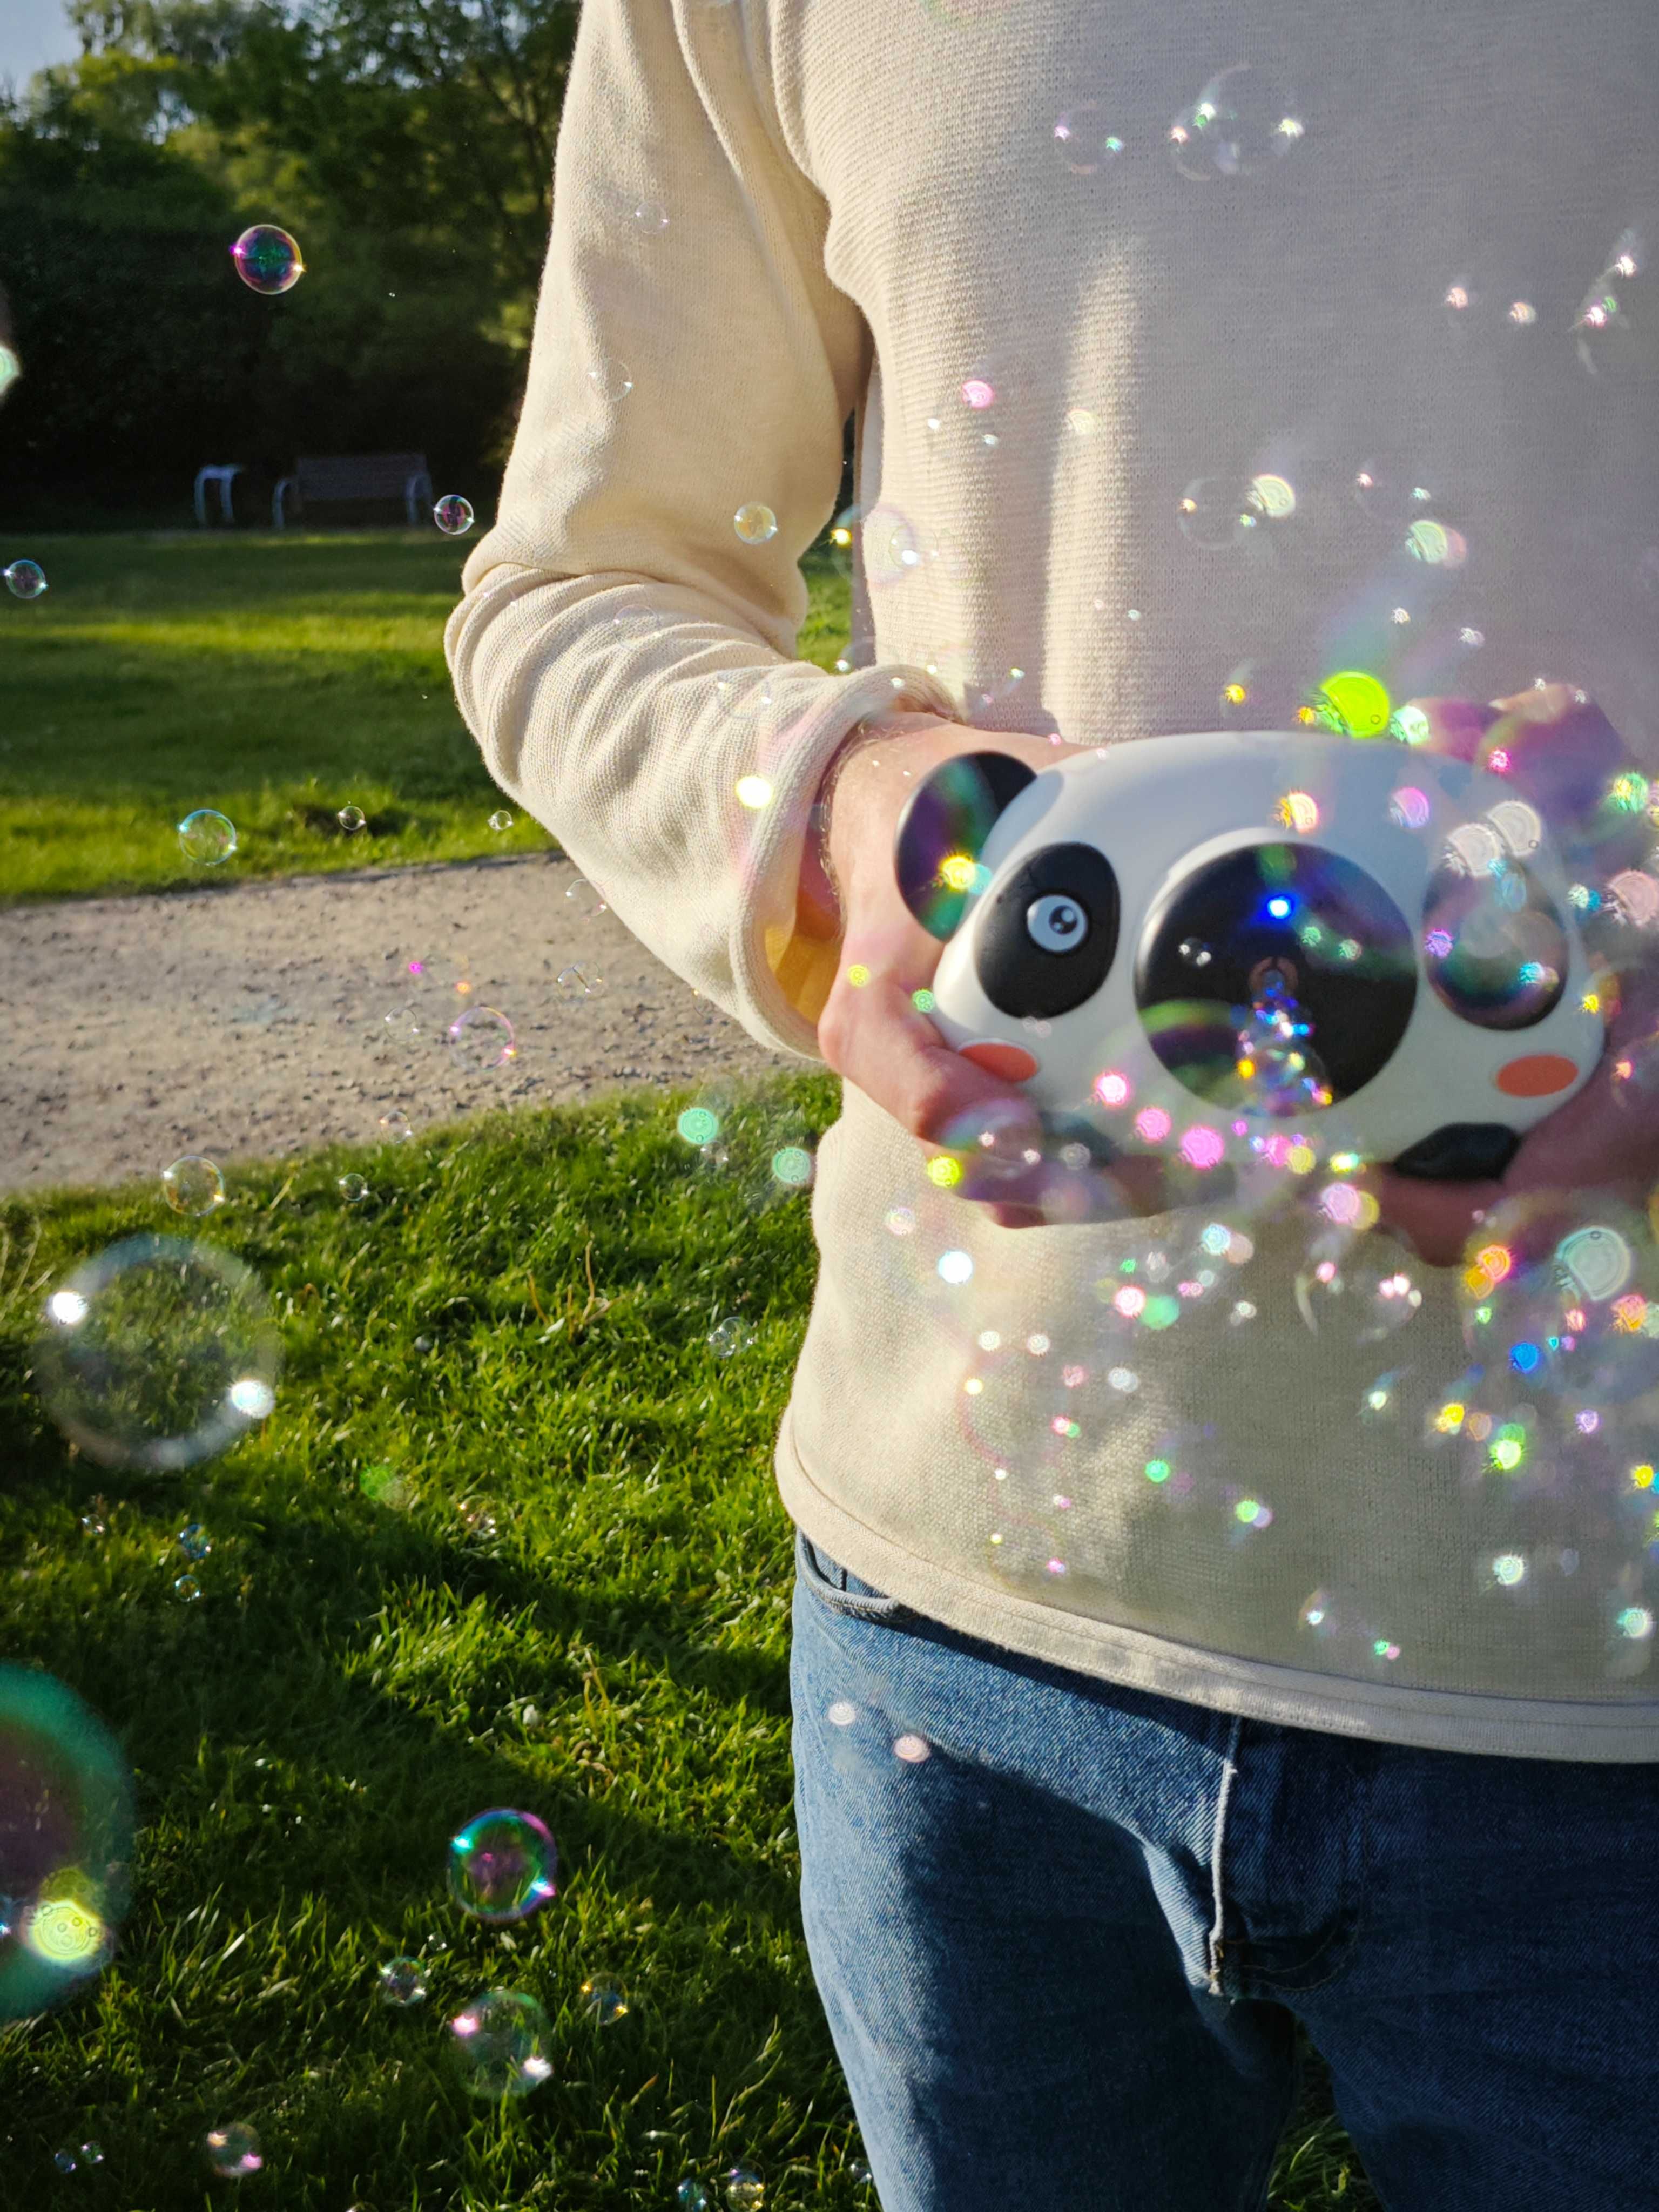 Aparat do robienia baniek BUBBLE CAMERA / Фотоапар з бульбашками